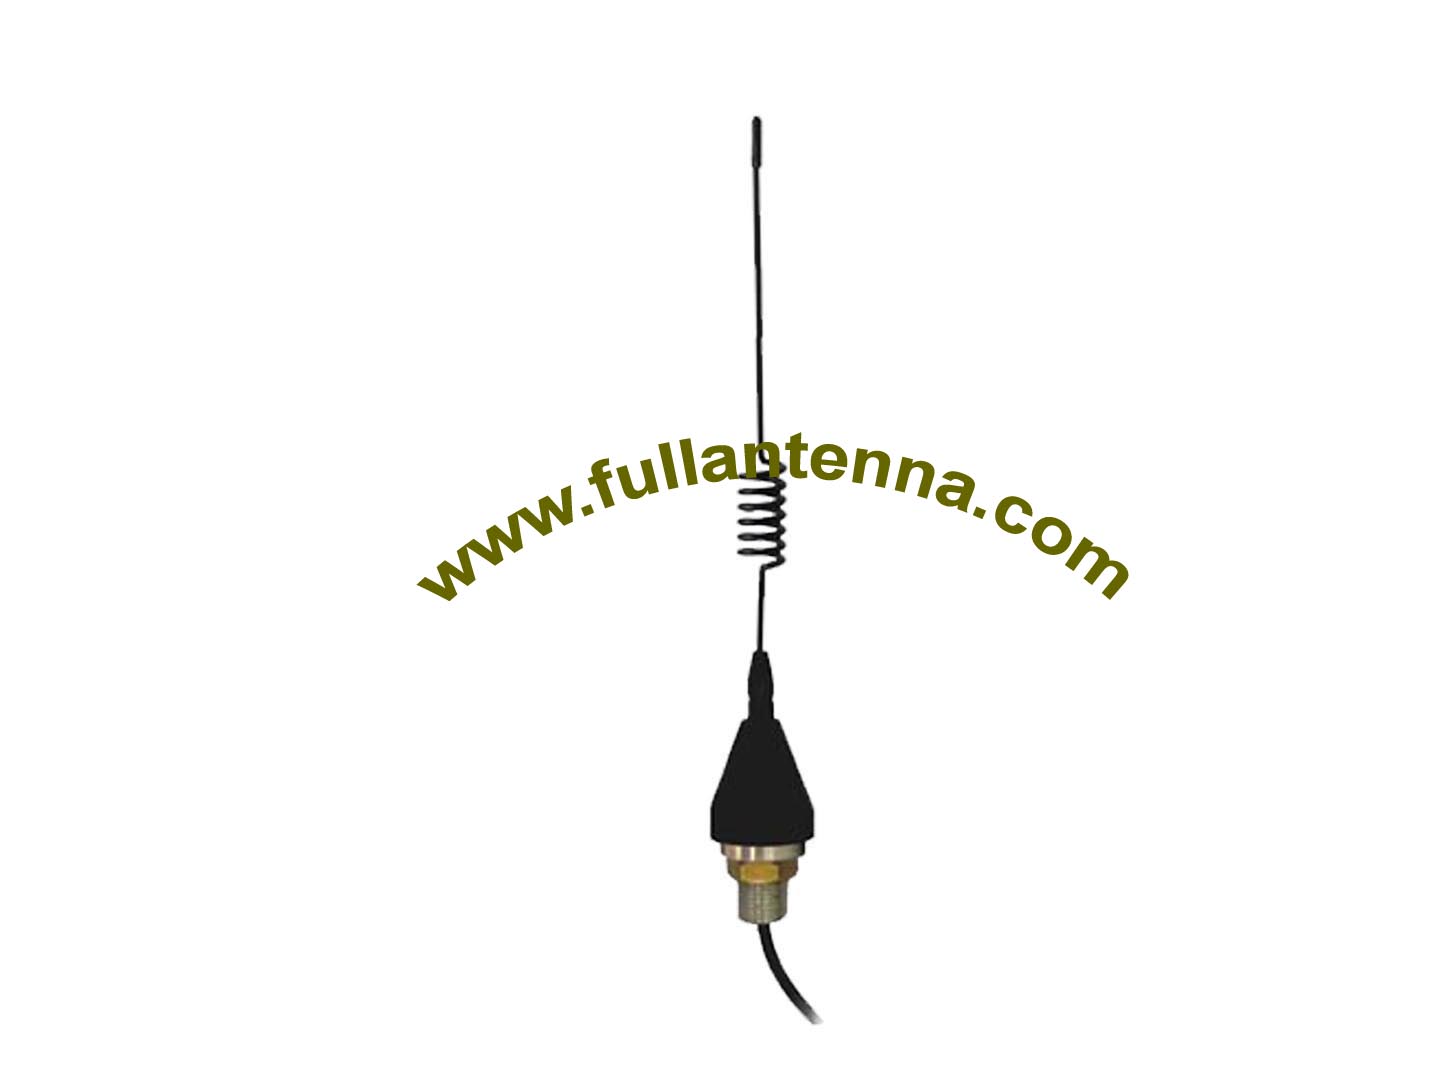 P / N: Antena FA915.0603,915Mhz, montaje de tornillo de antena whip 915mhz